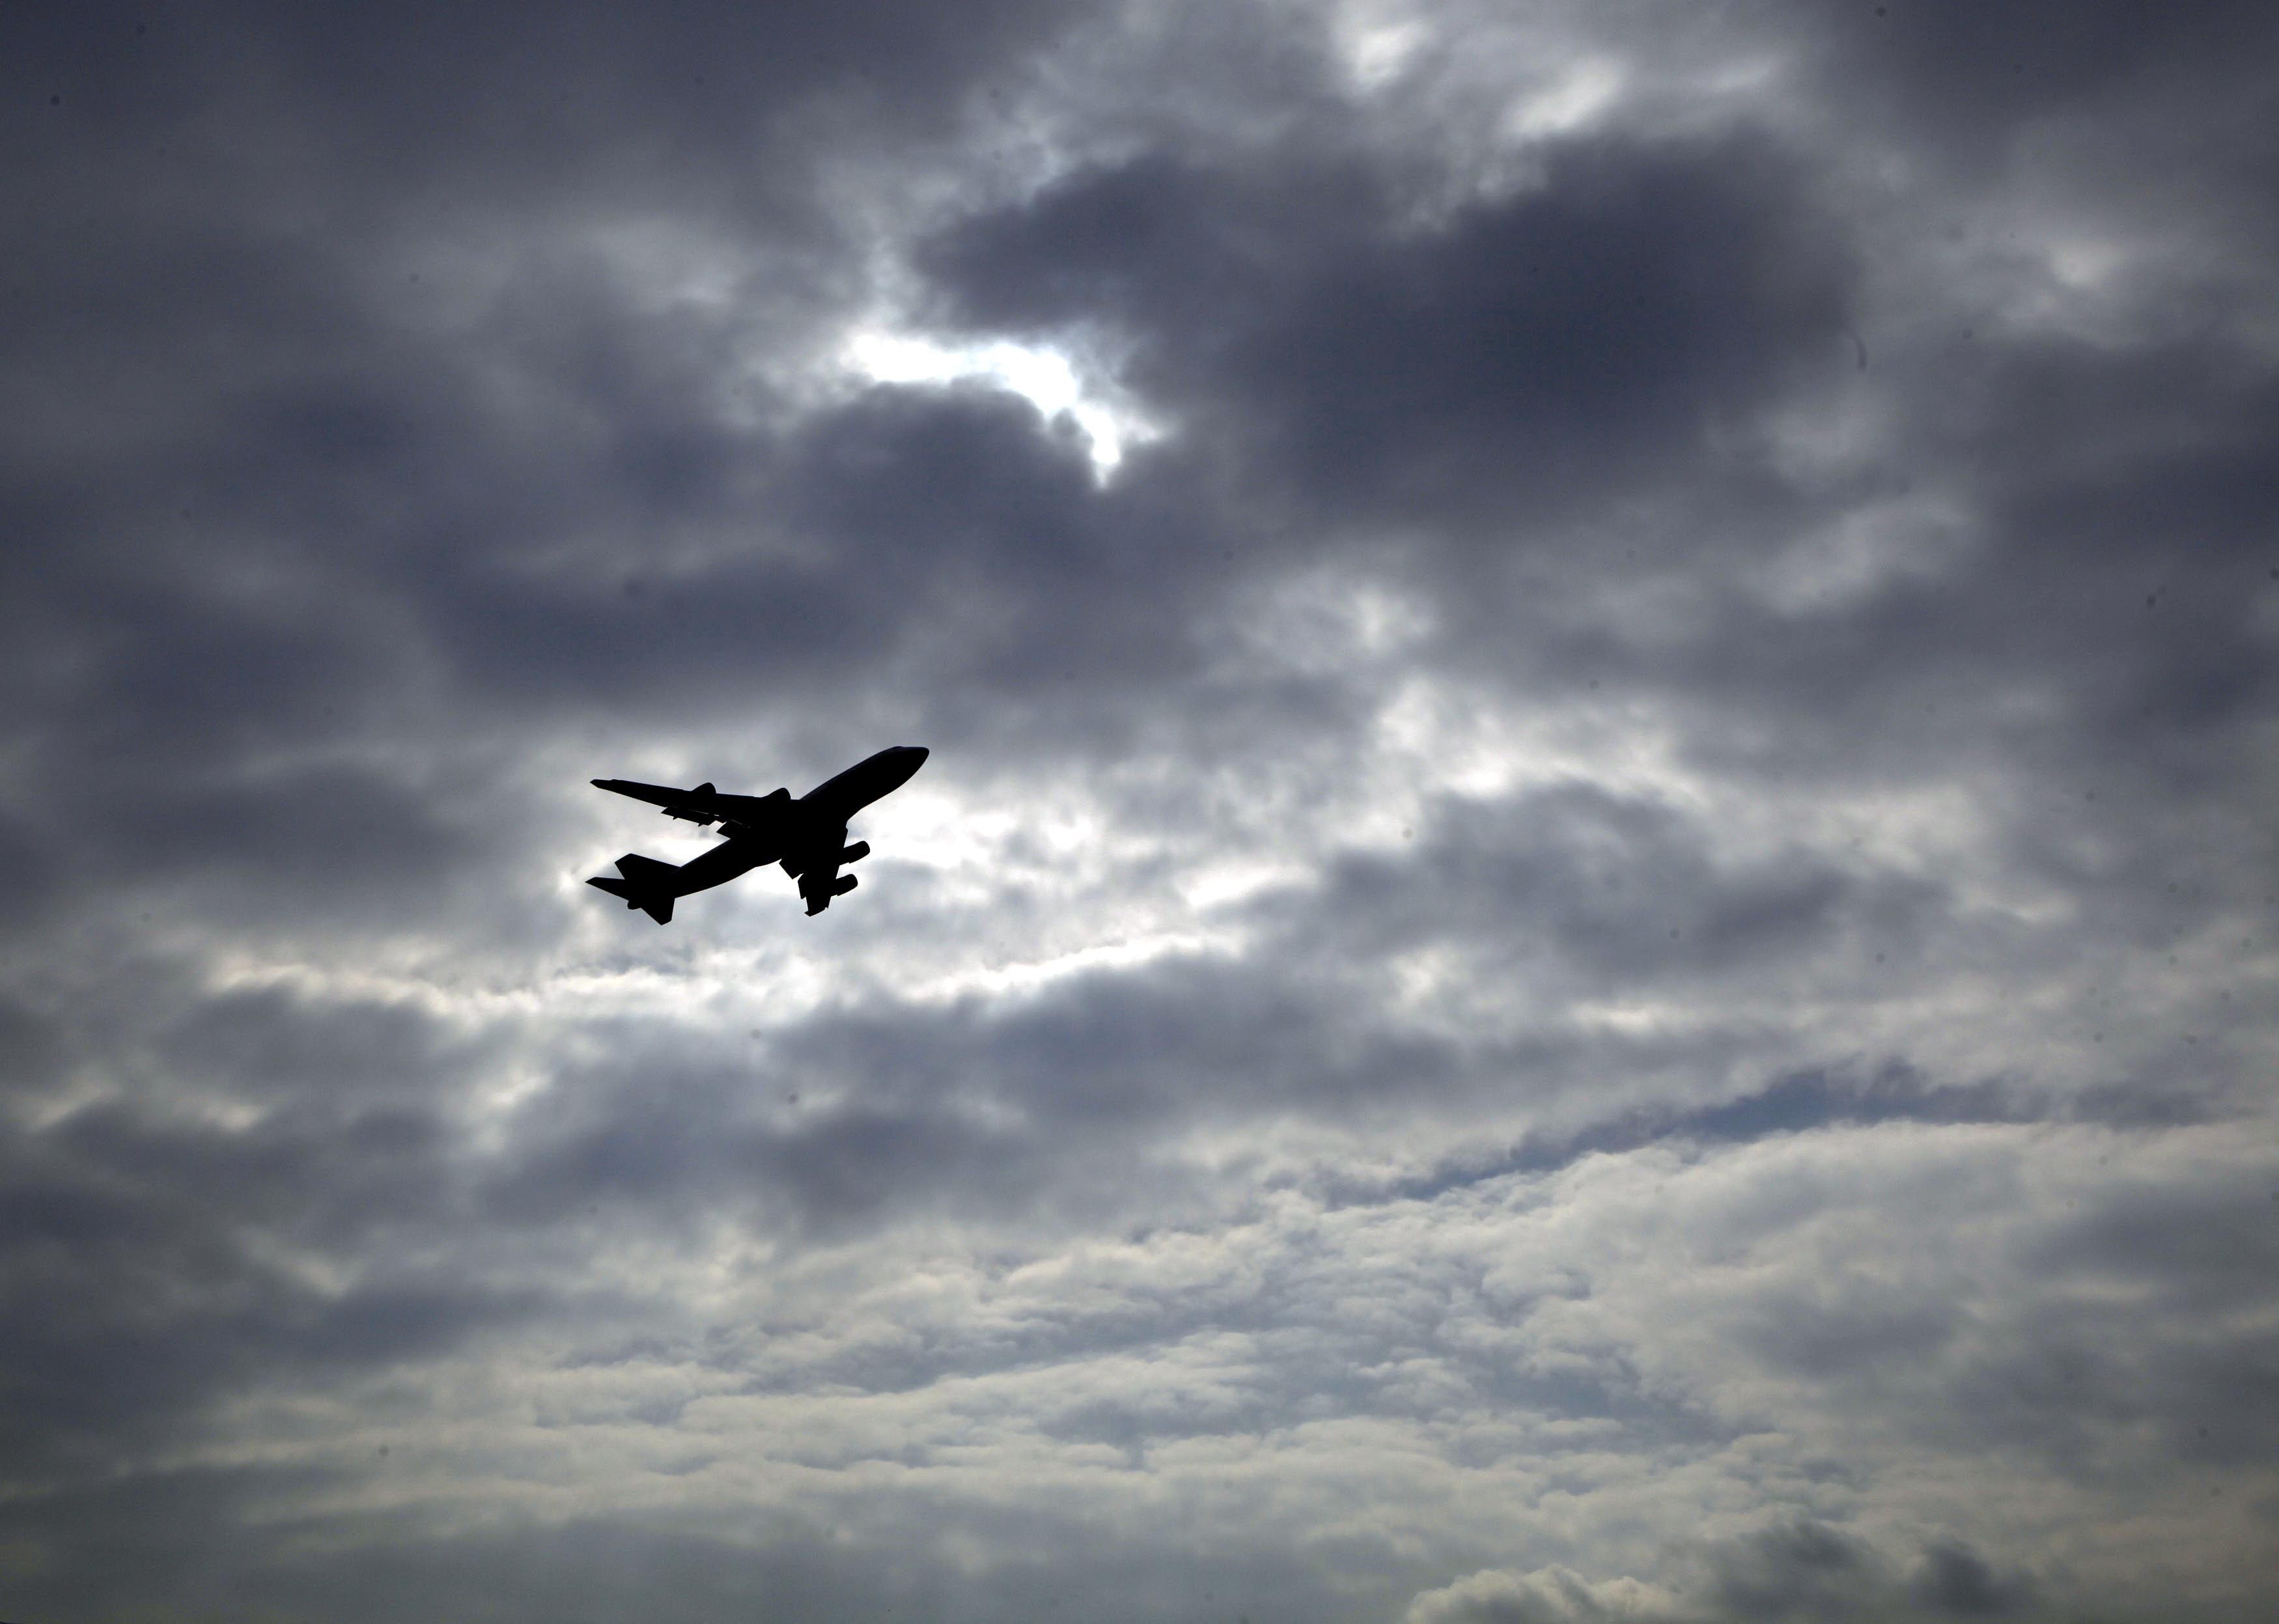 Τεχνολογία επένδυσης αποσκευών μειώνει τον κίνδυνο από έκρηξη βόμβας σε αεροπλάνο